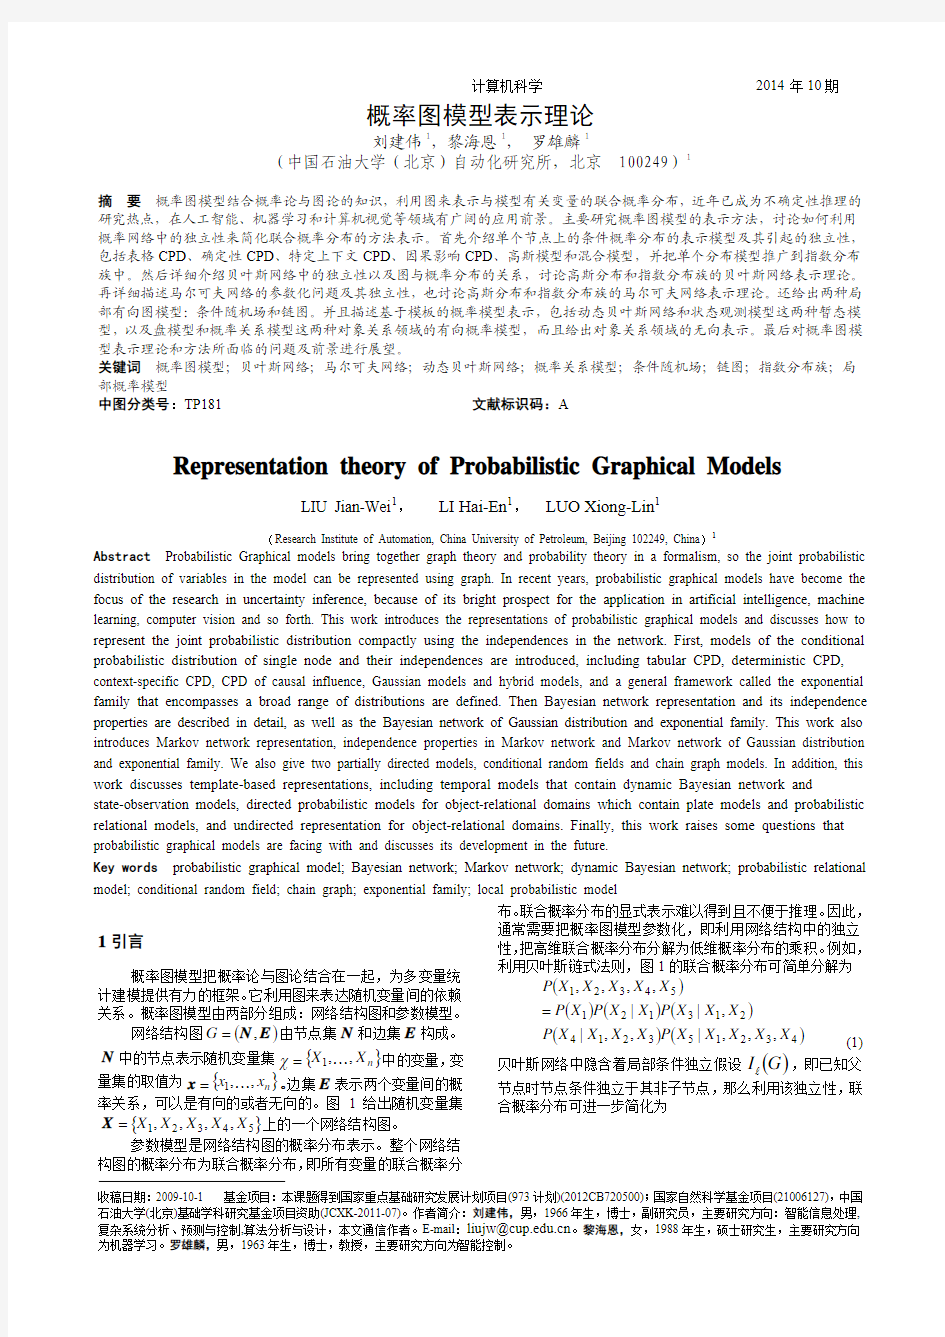 概率图模型表示理论_计算机科学刘建伟,黎海恩, 罗雄麟